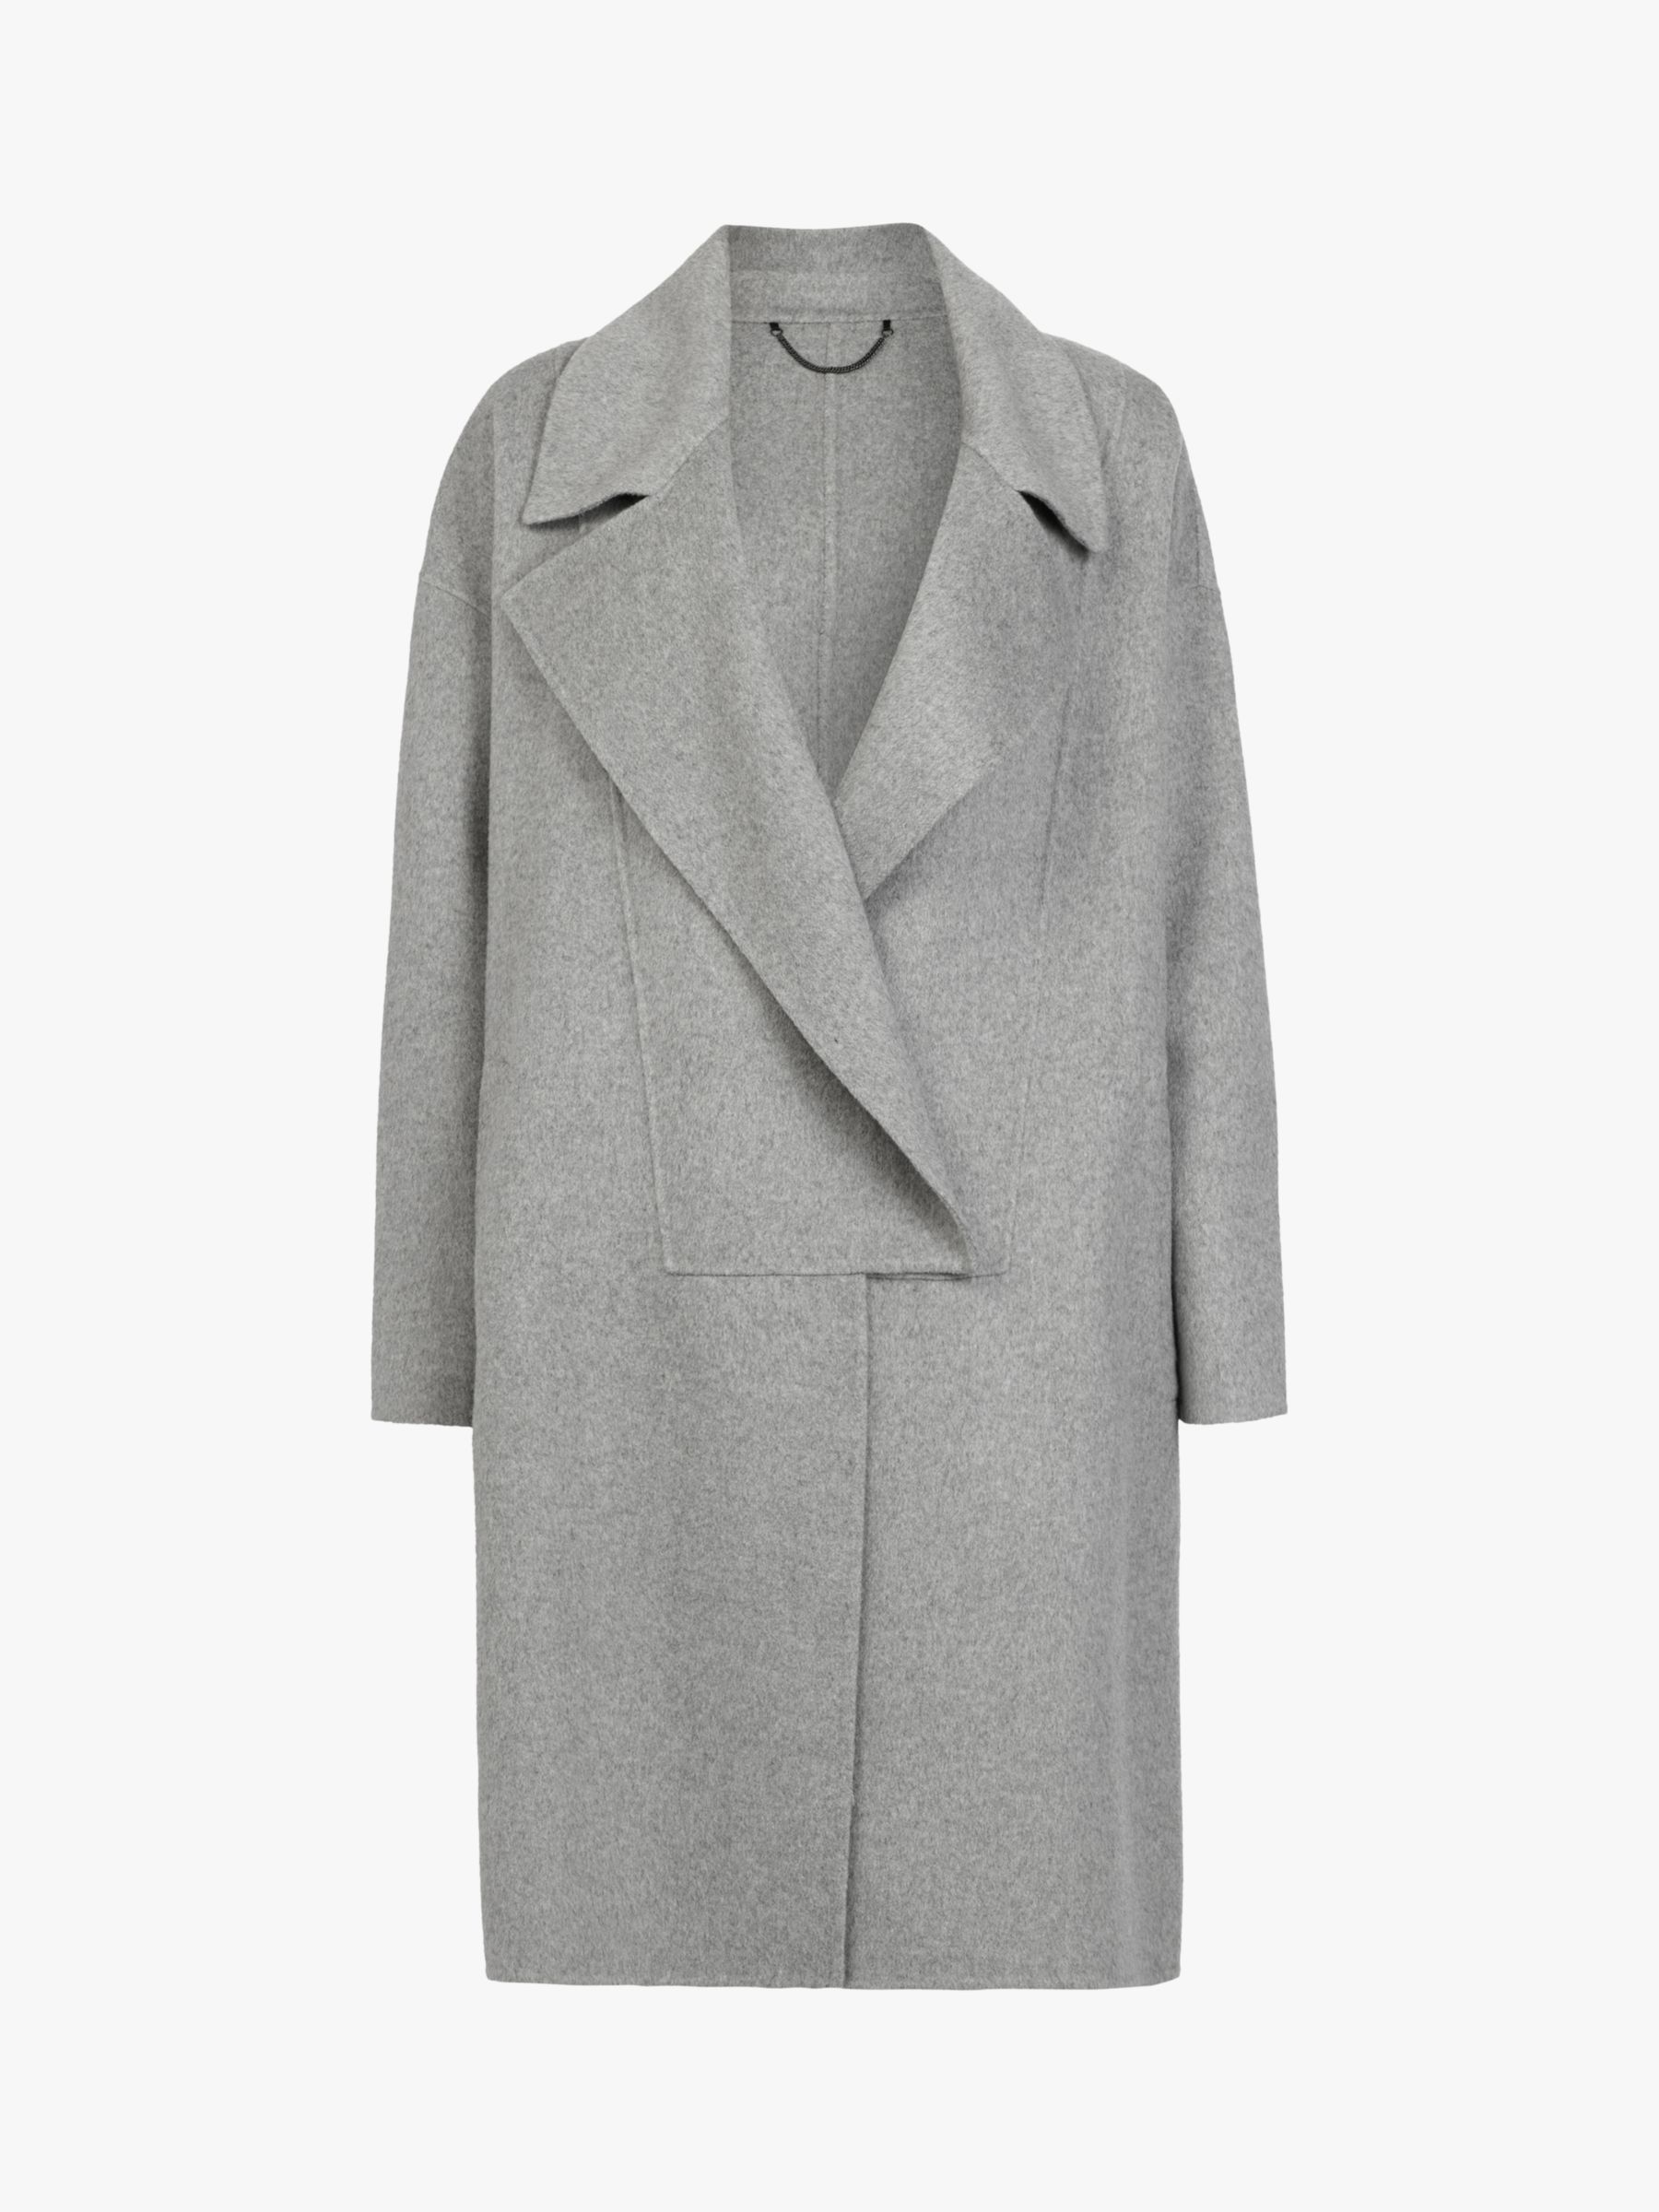 AllSaints Ryder Coat, Pale Grey